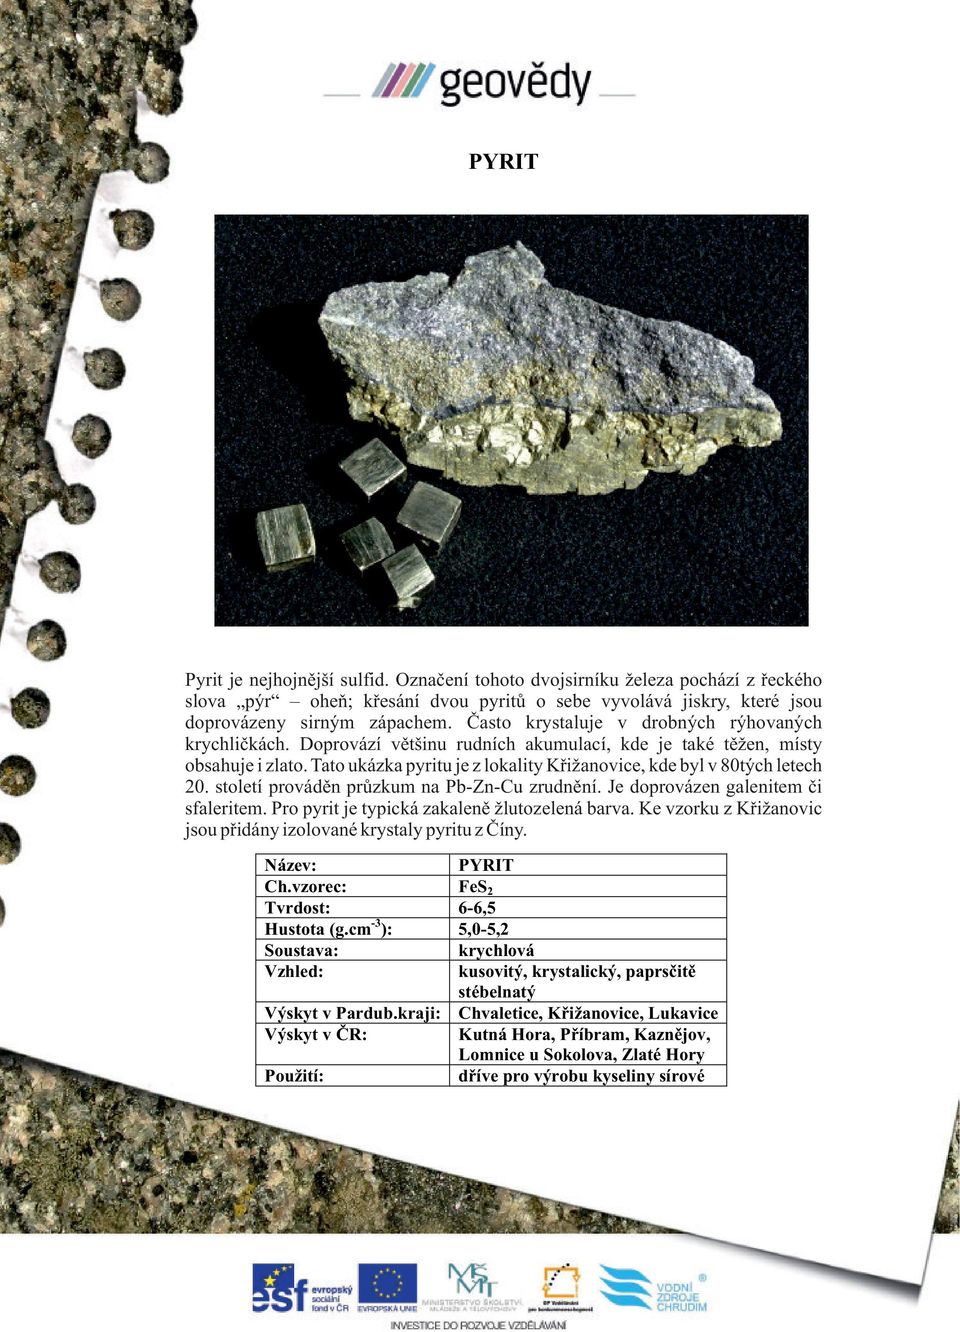 Tato ukázka pyritu je z lokality Křižanovice, kde byl v 80tých letech 20. století prováděn průzkum na Pb-Zn-Cu zrudnění. Je doprovázen galenitem či sfaleritem.